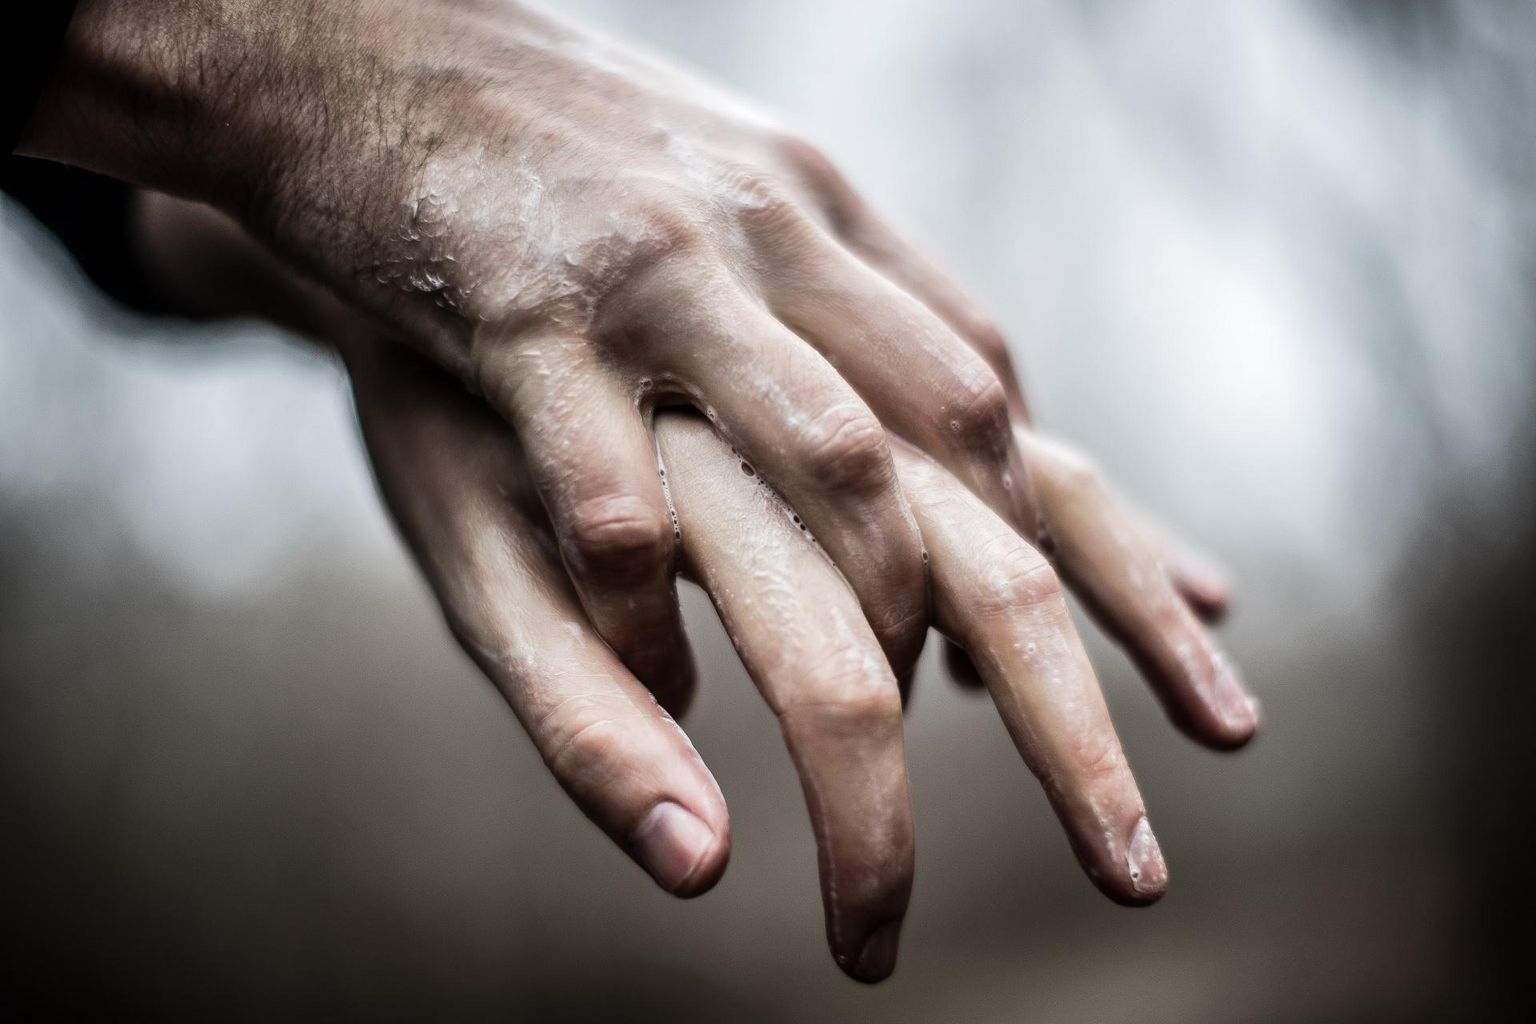 Kätepesuks tuleb kasutada sooja vett ja seepi; avalikes kohtades kasutada alkoholipõhist käte desinfitseerimisvahendit. Illustreeriv foto käsi pesevast inimesest. Vat nii tahab süvariik meid orjastada!